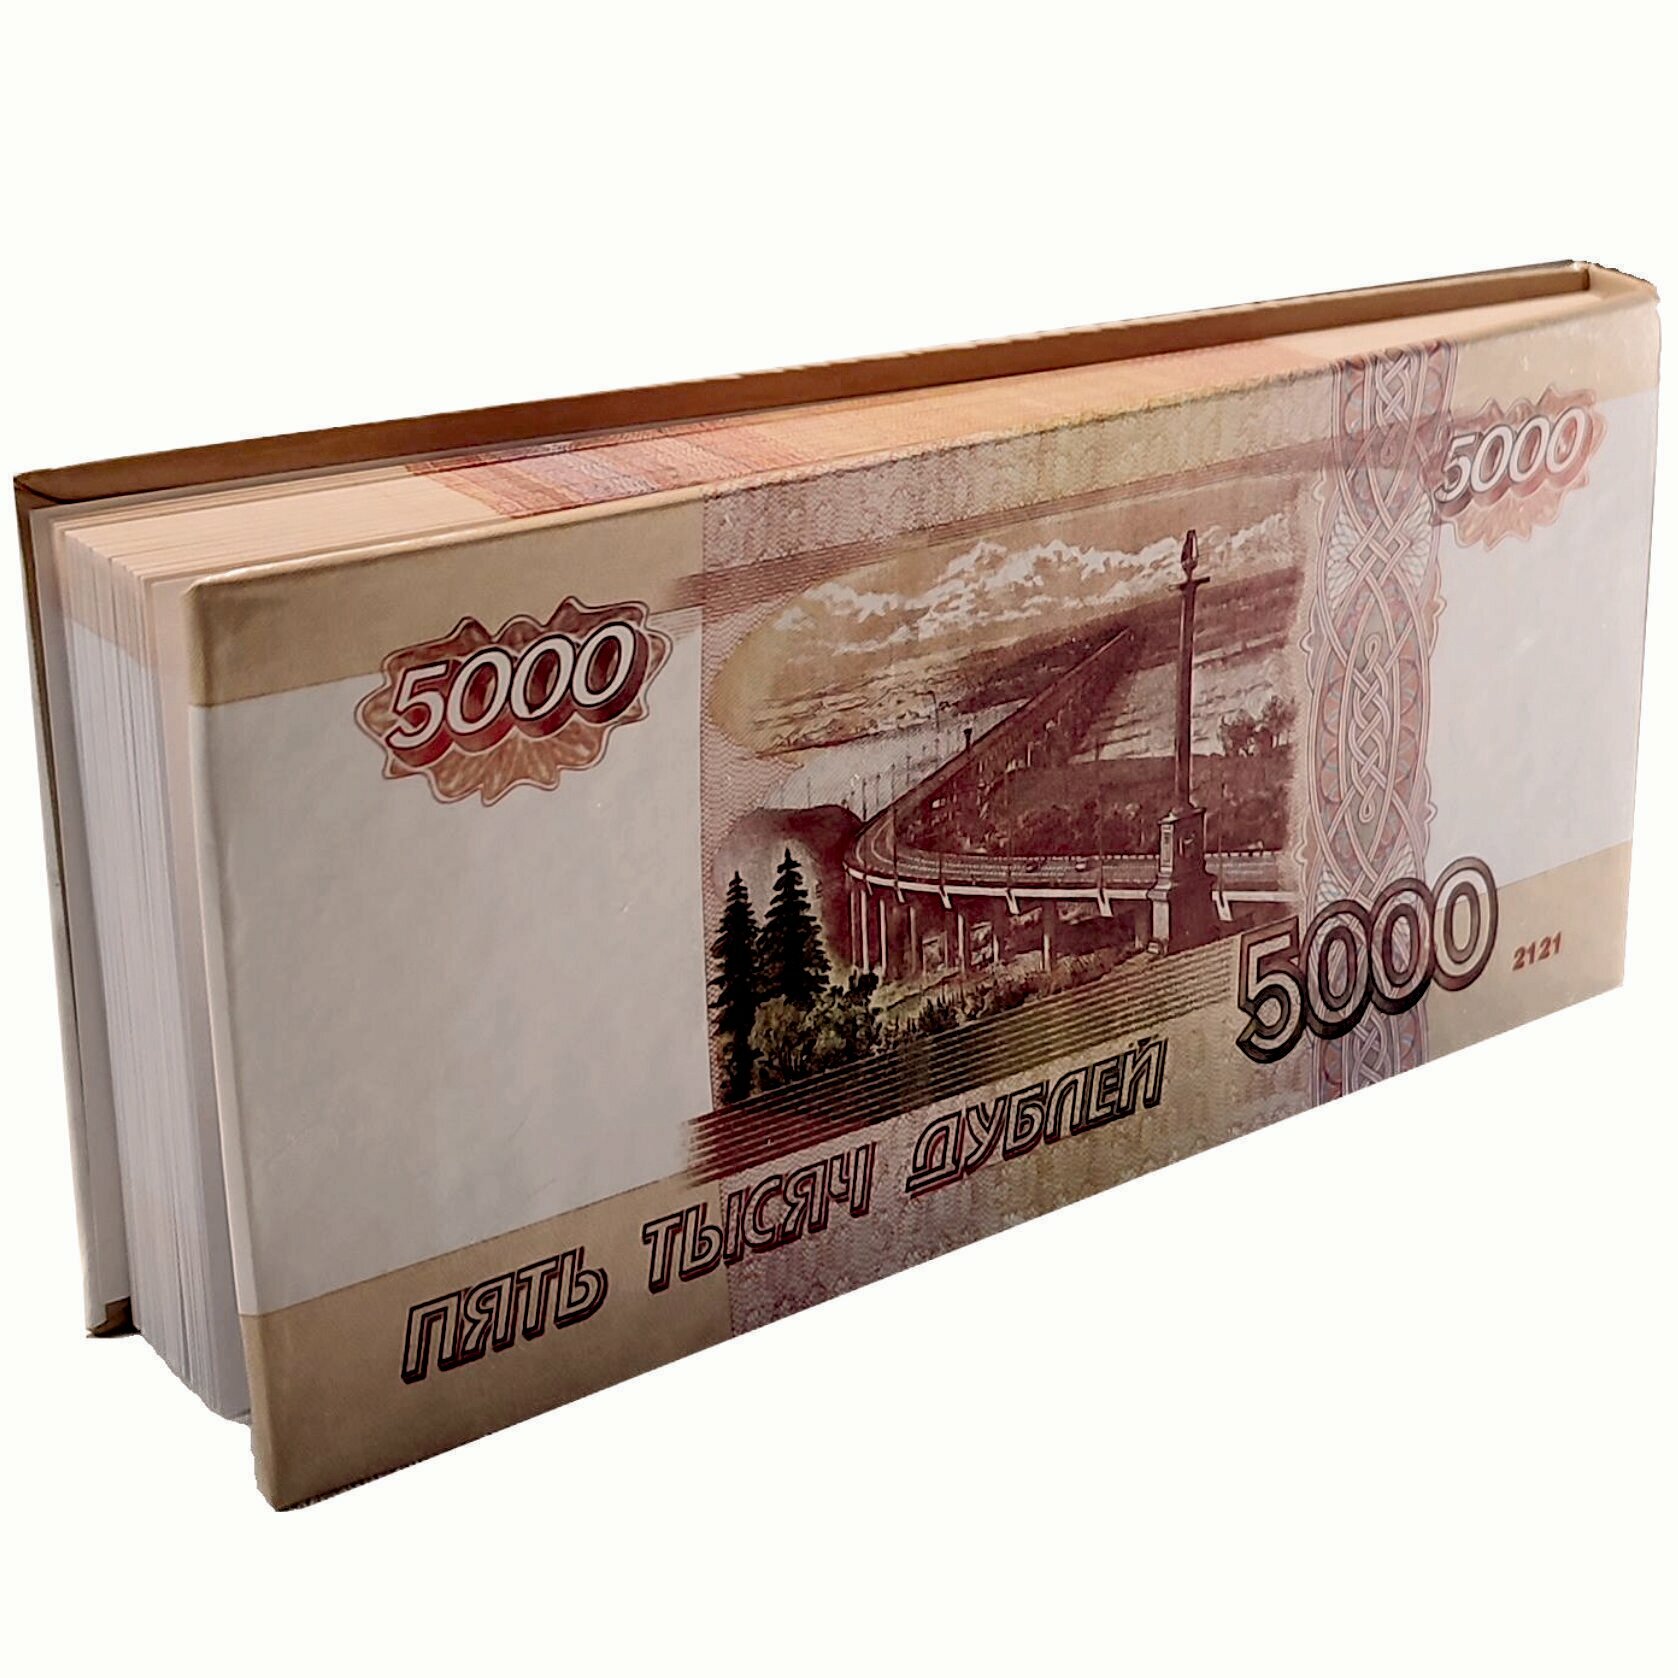 Отрывной блокнот-визитка пачка денег "5000 дублей" / Жесткая обложка / В линейку, 80 л.